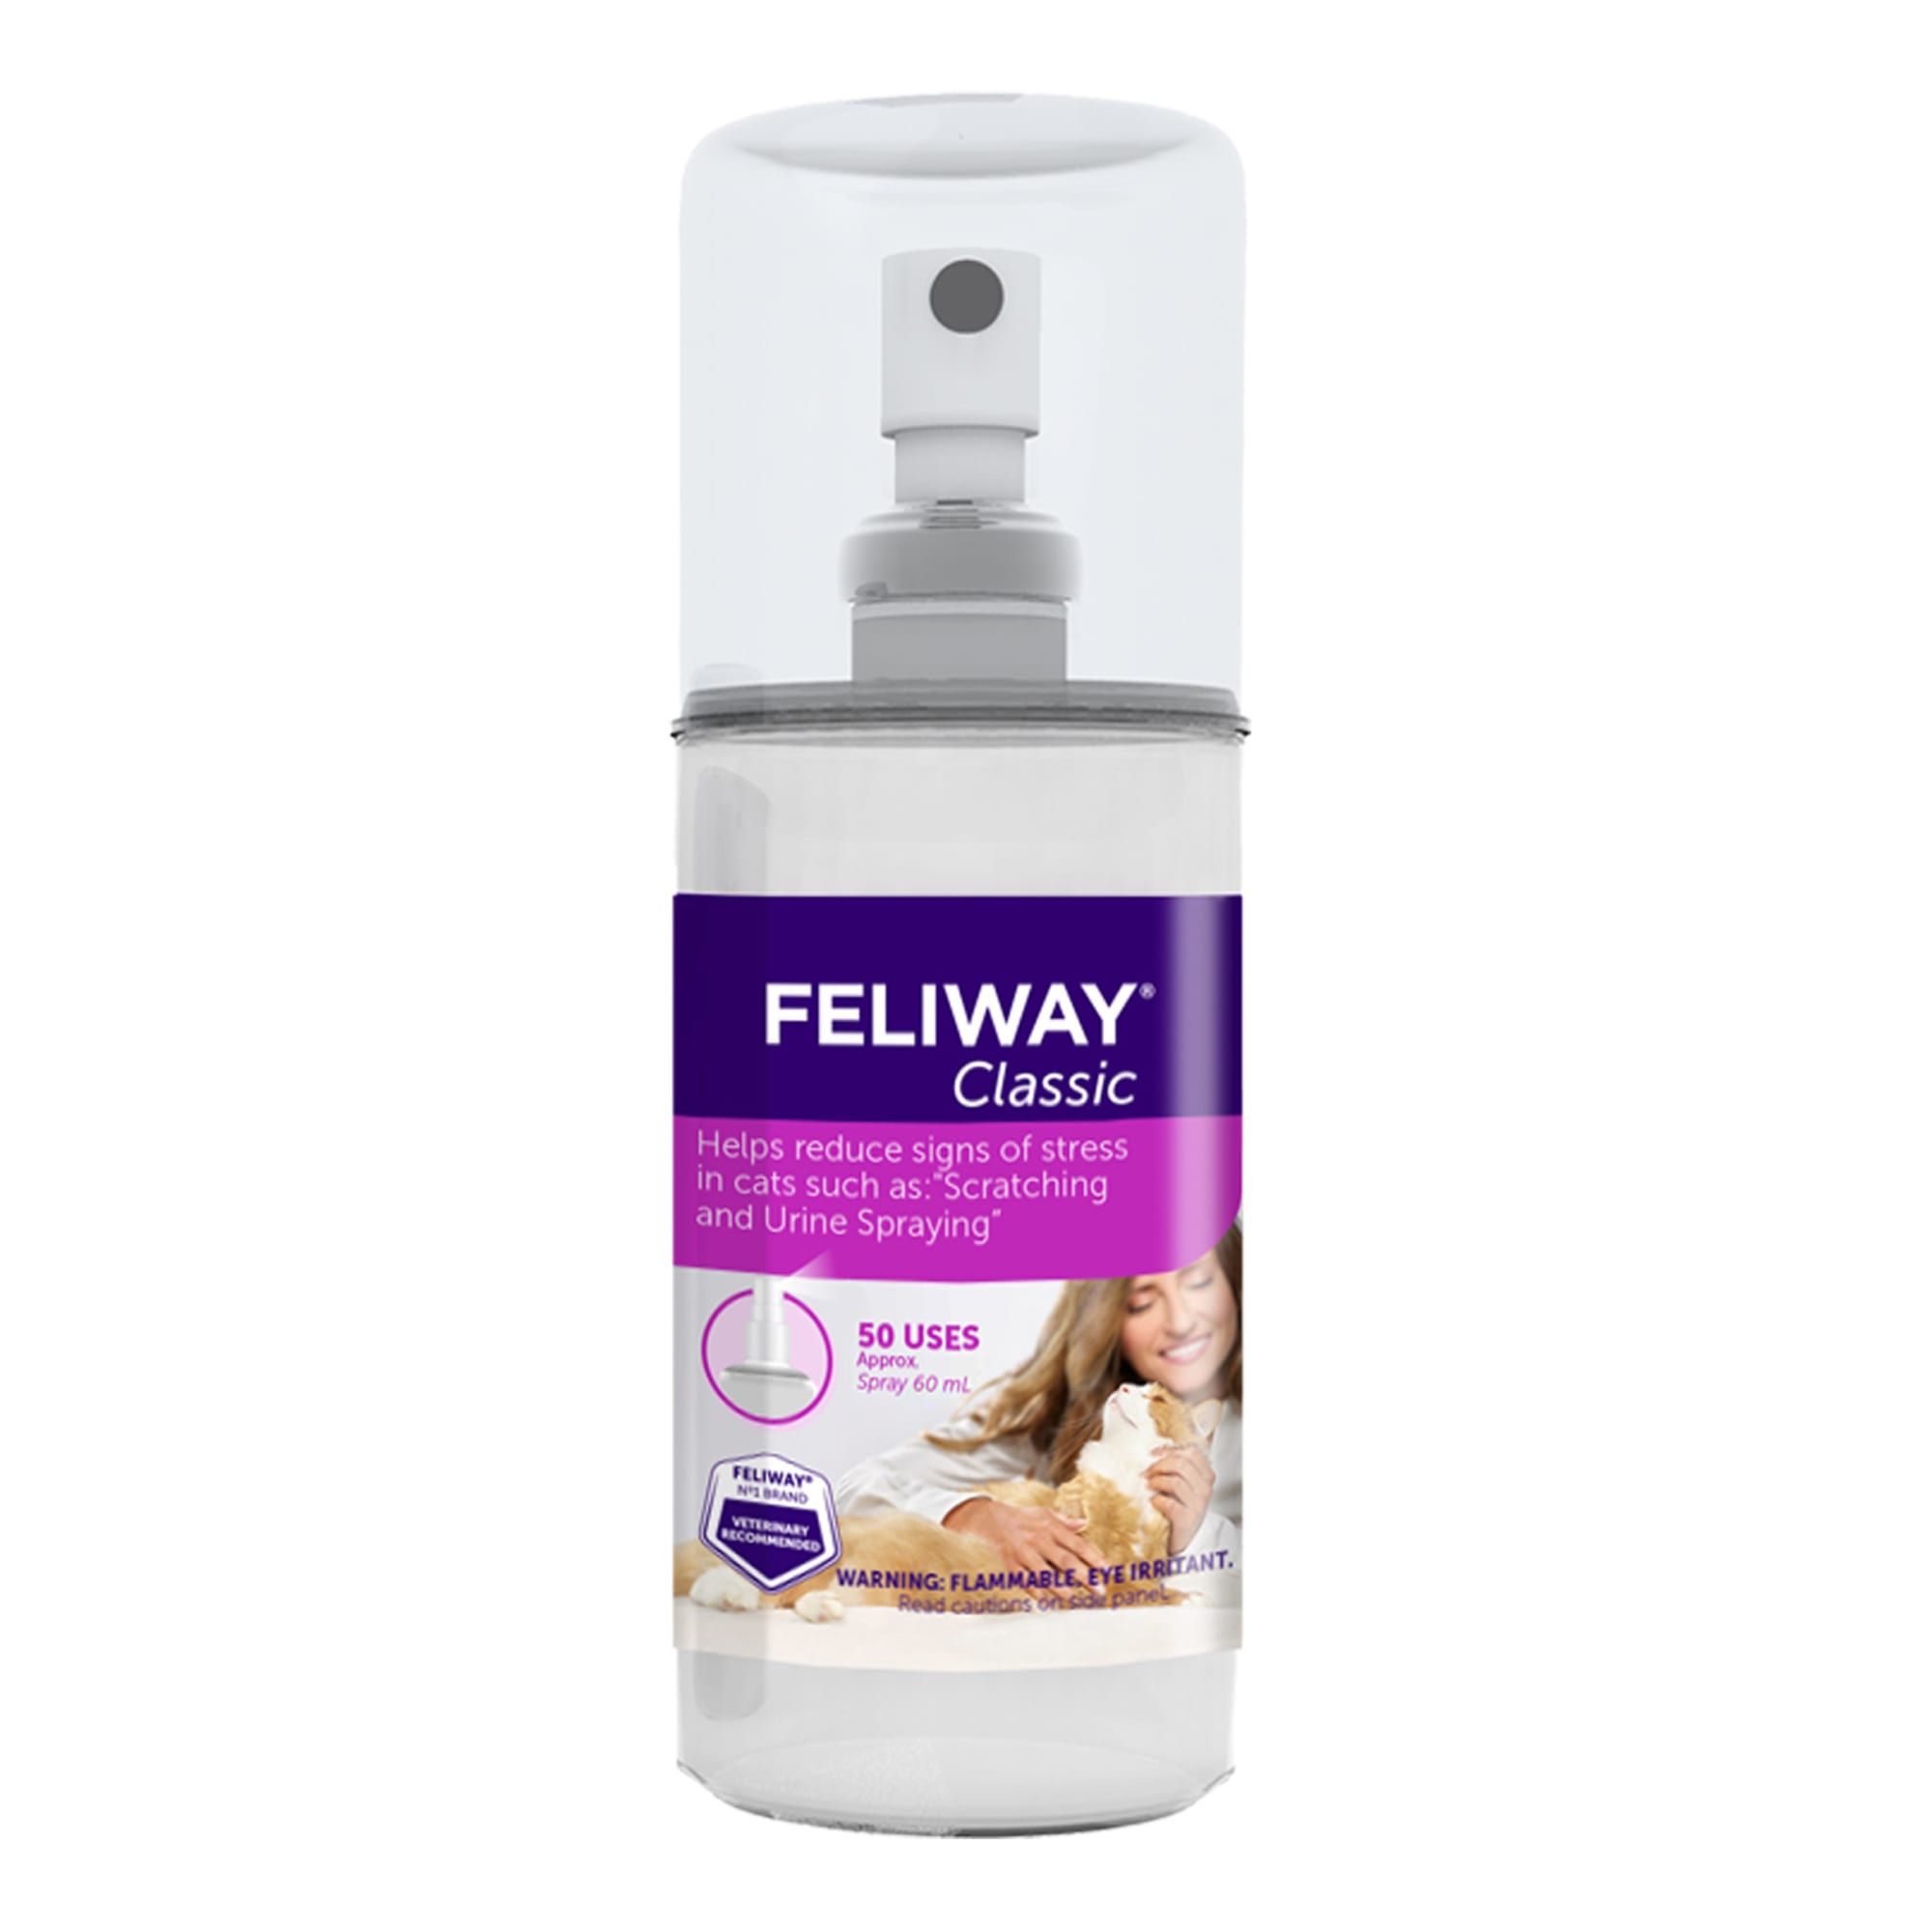 FELIWAY F3 SPRAY 60 ml Feromona Facial antiestres para gatos